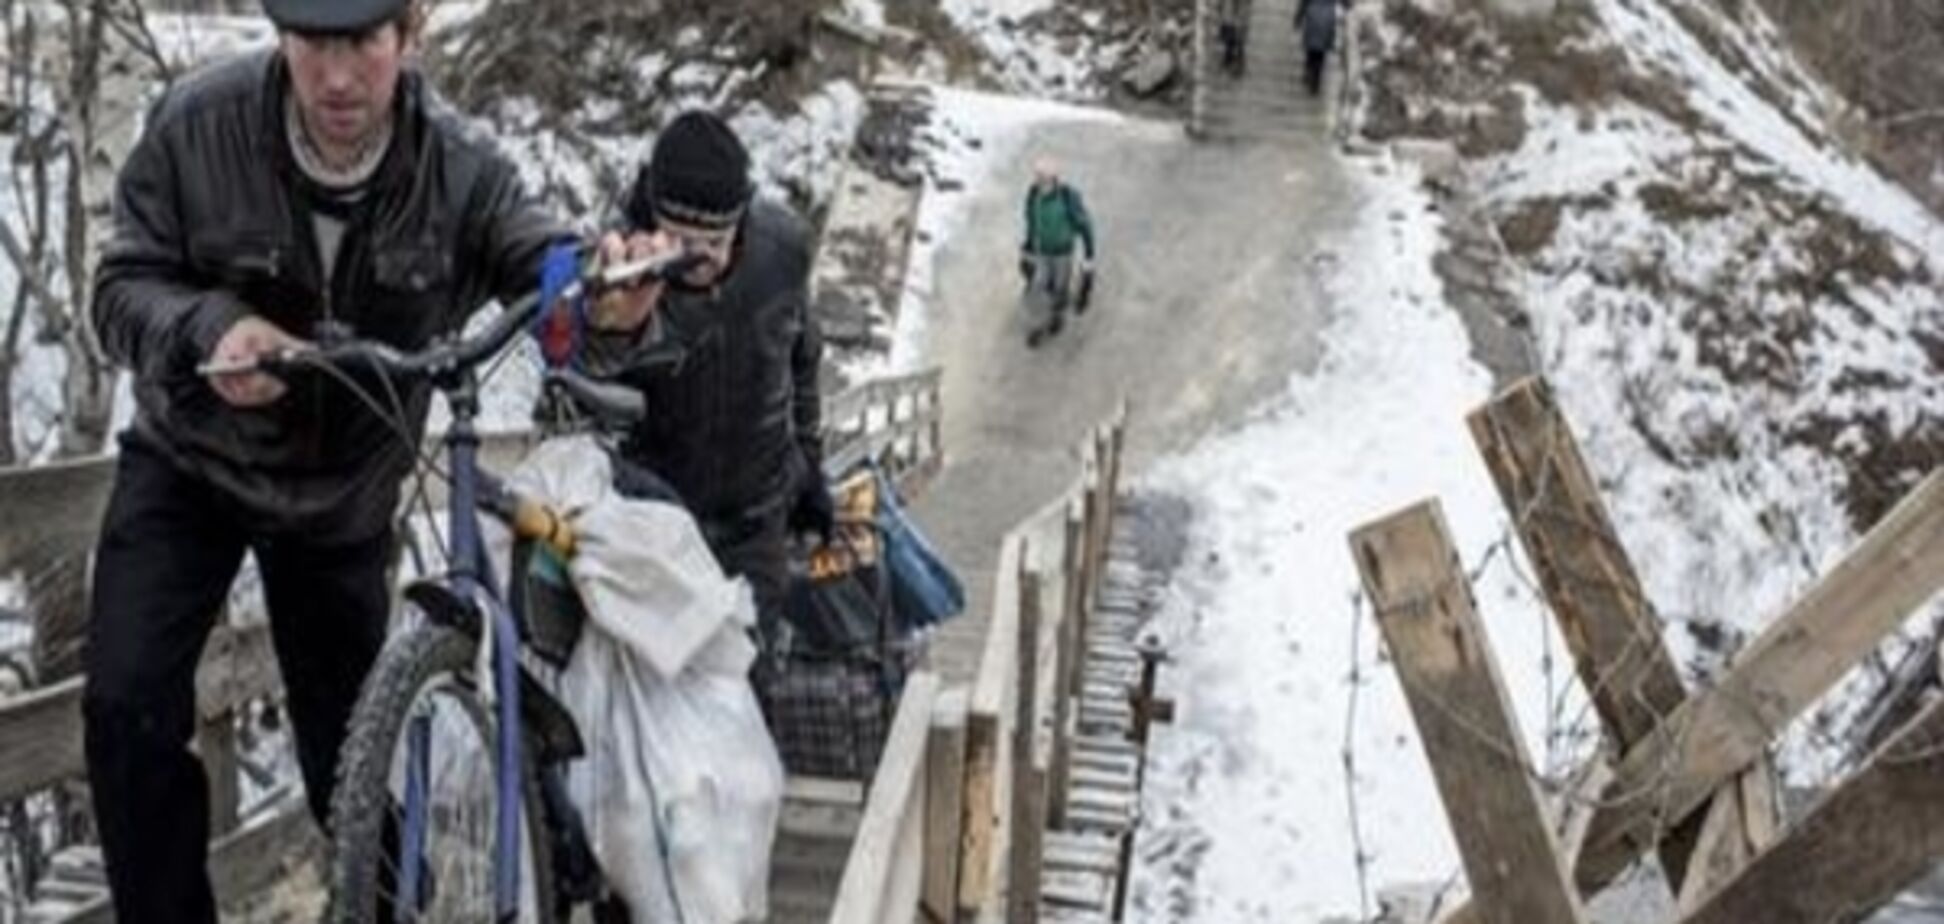 Віце-спікерка ВР: На Донбасі не освоюють виділені на відновлення кошти